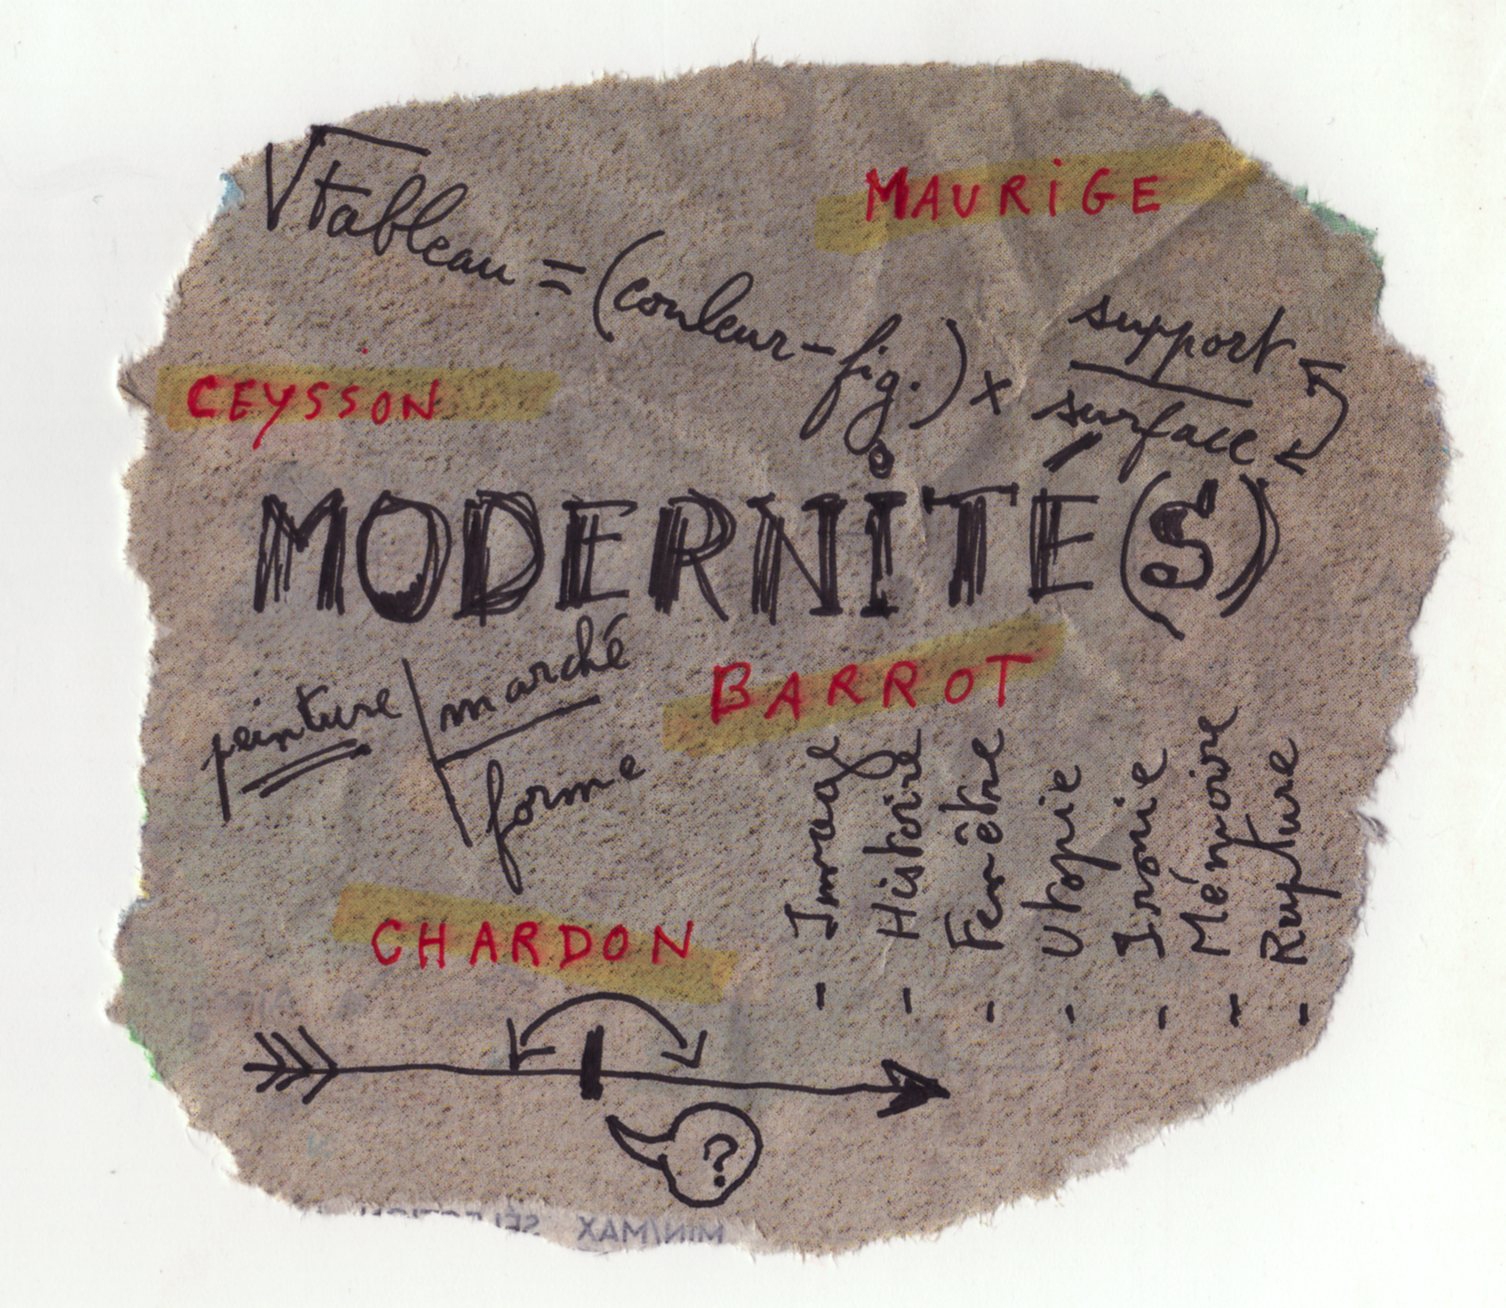 Visuel du colloque "Modernités" du labo LEM